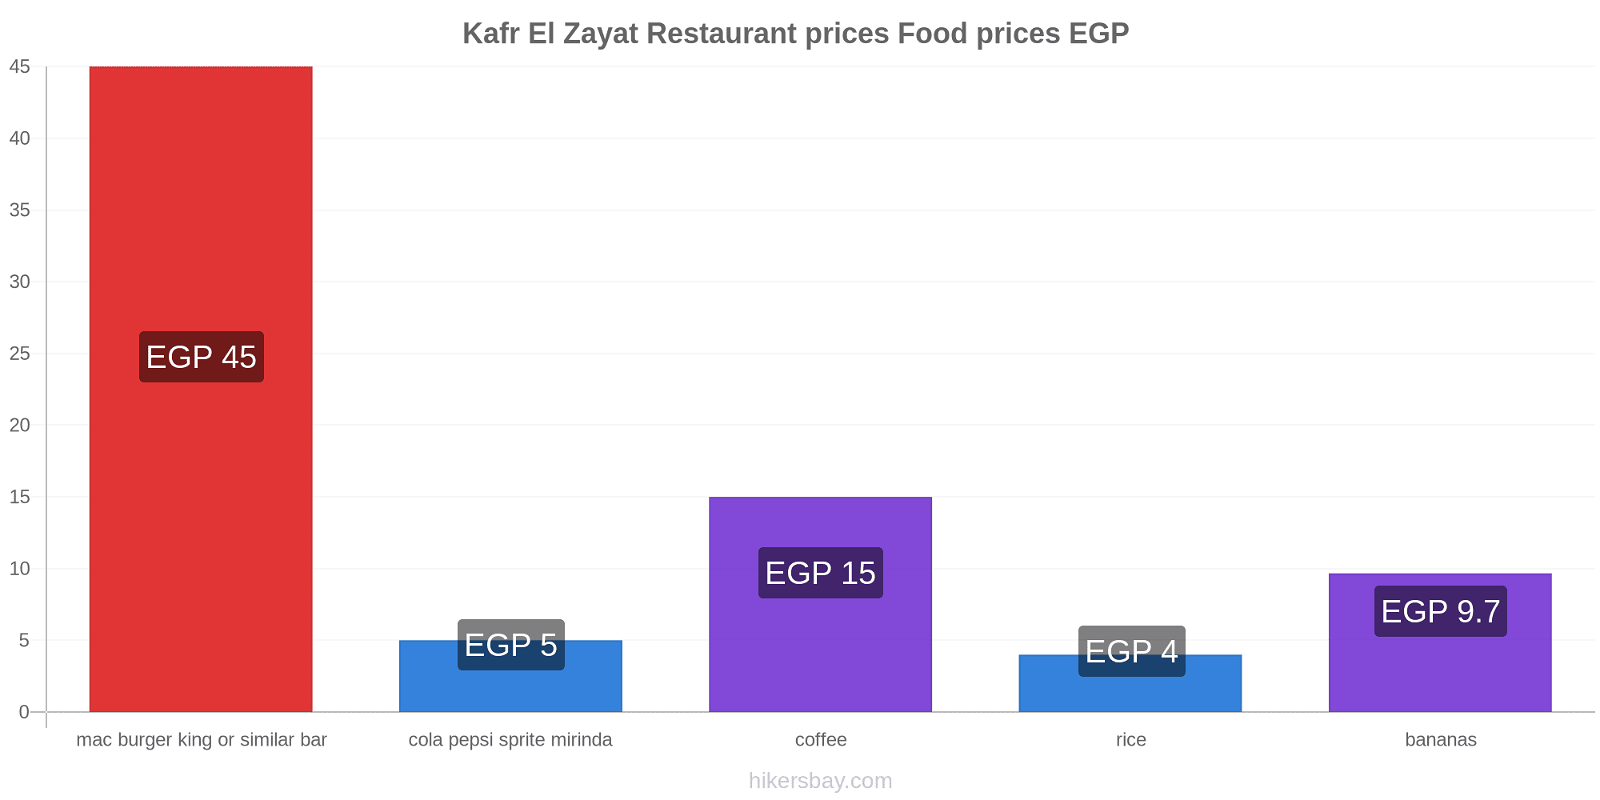 Kafr El Zayat price changes hikersbay.com